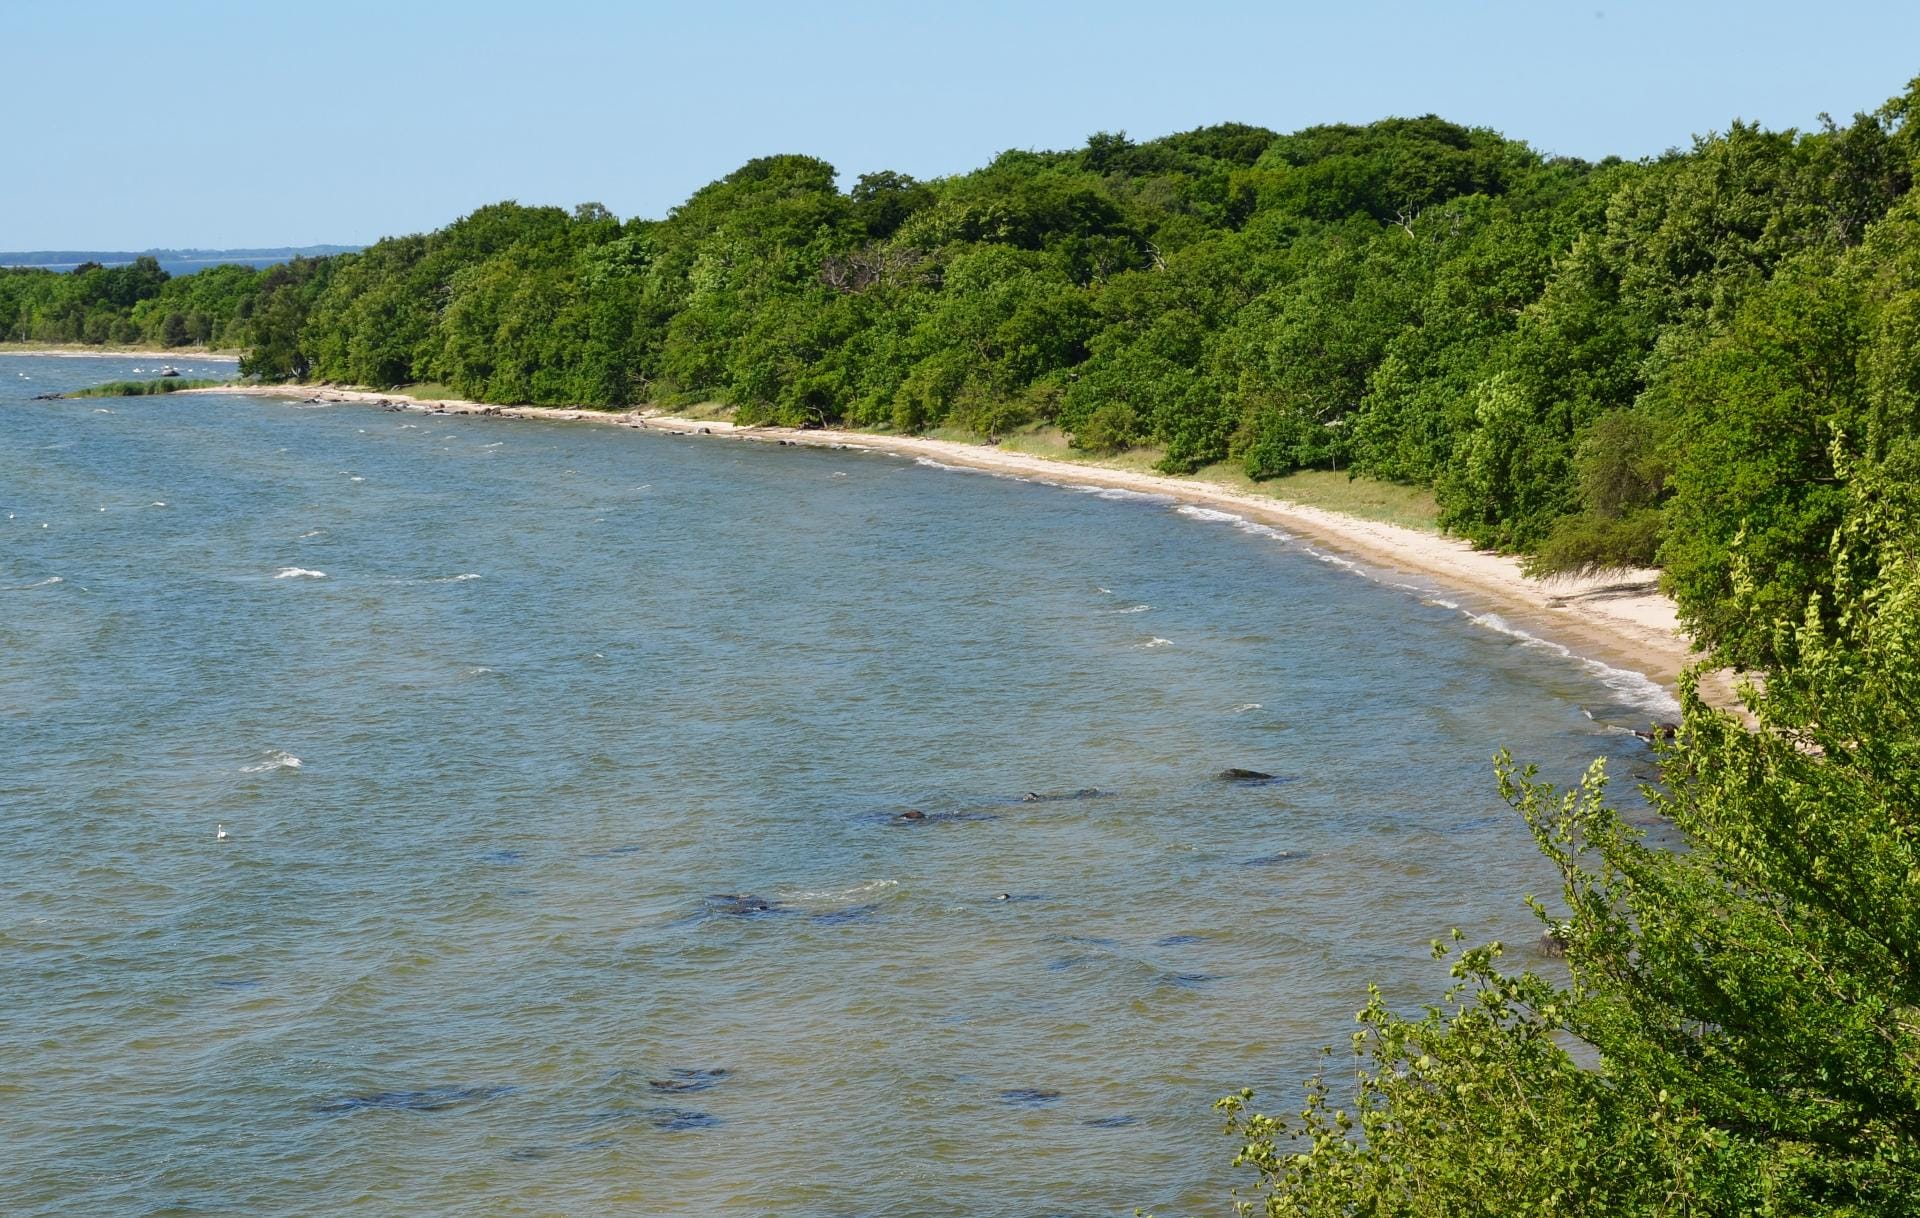 Vilm ist Teil des Biosphärenreservats Südost-Rügen und ein Naturreservat erster Güte.